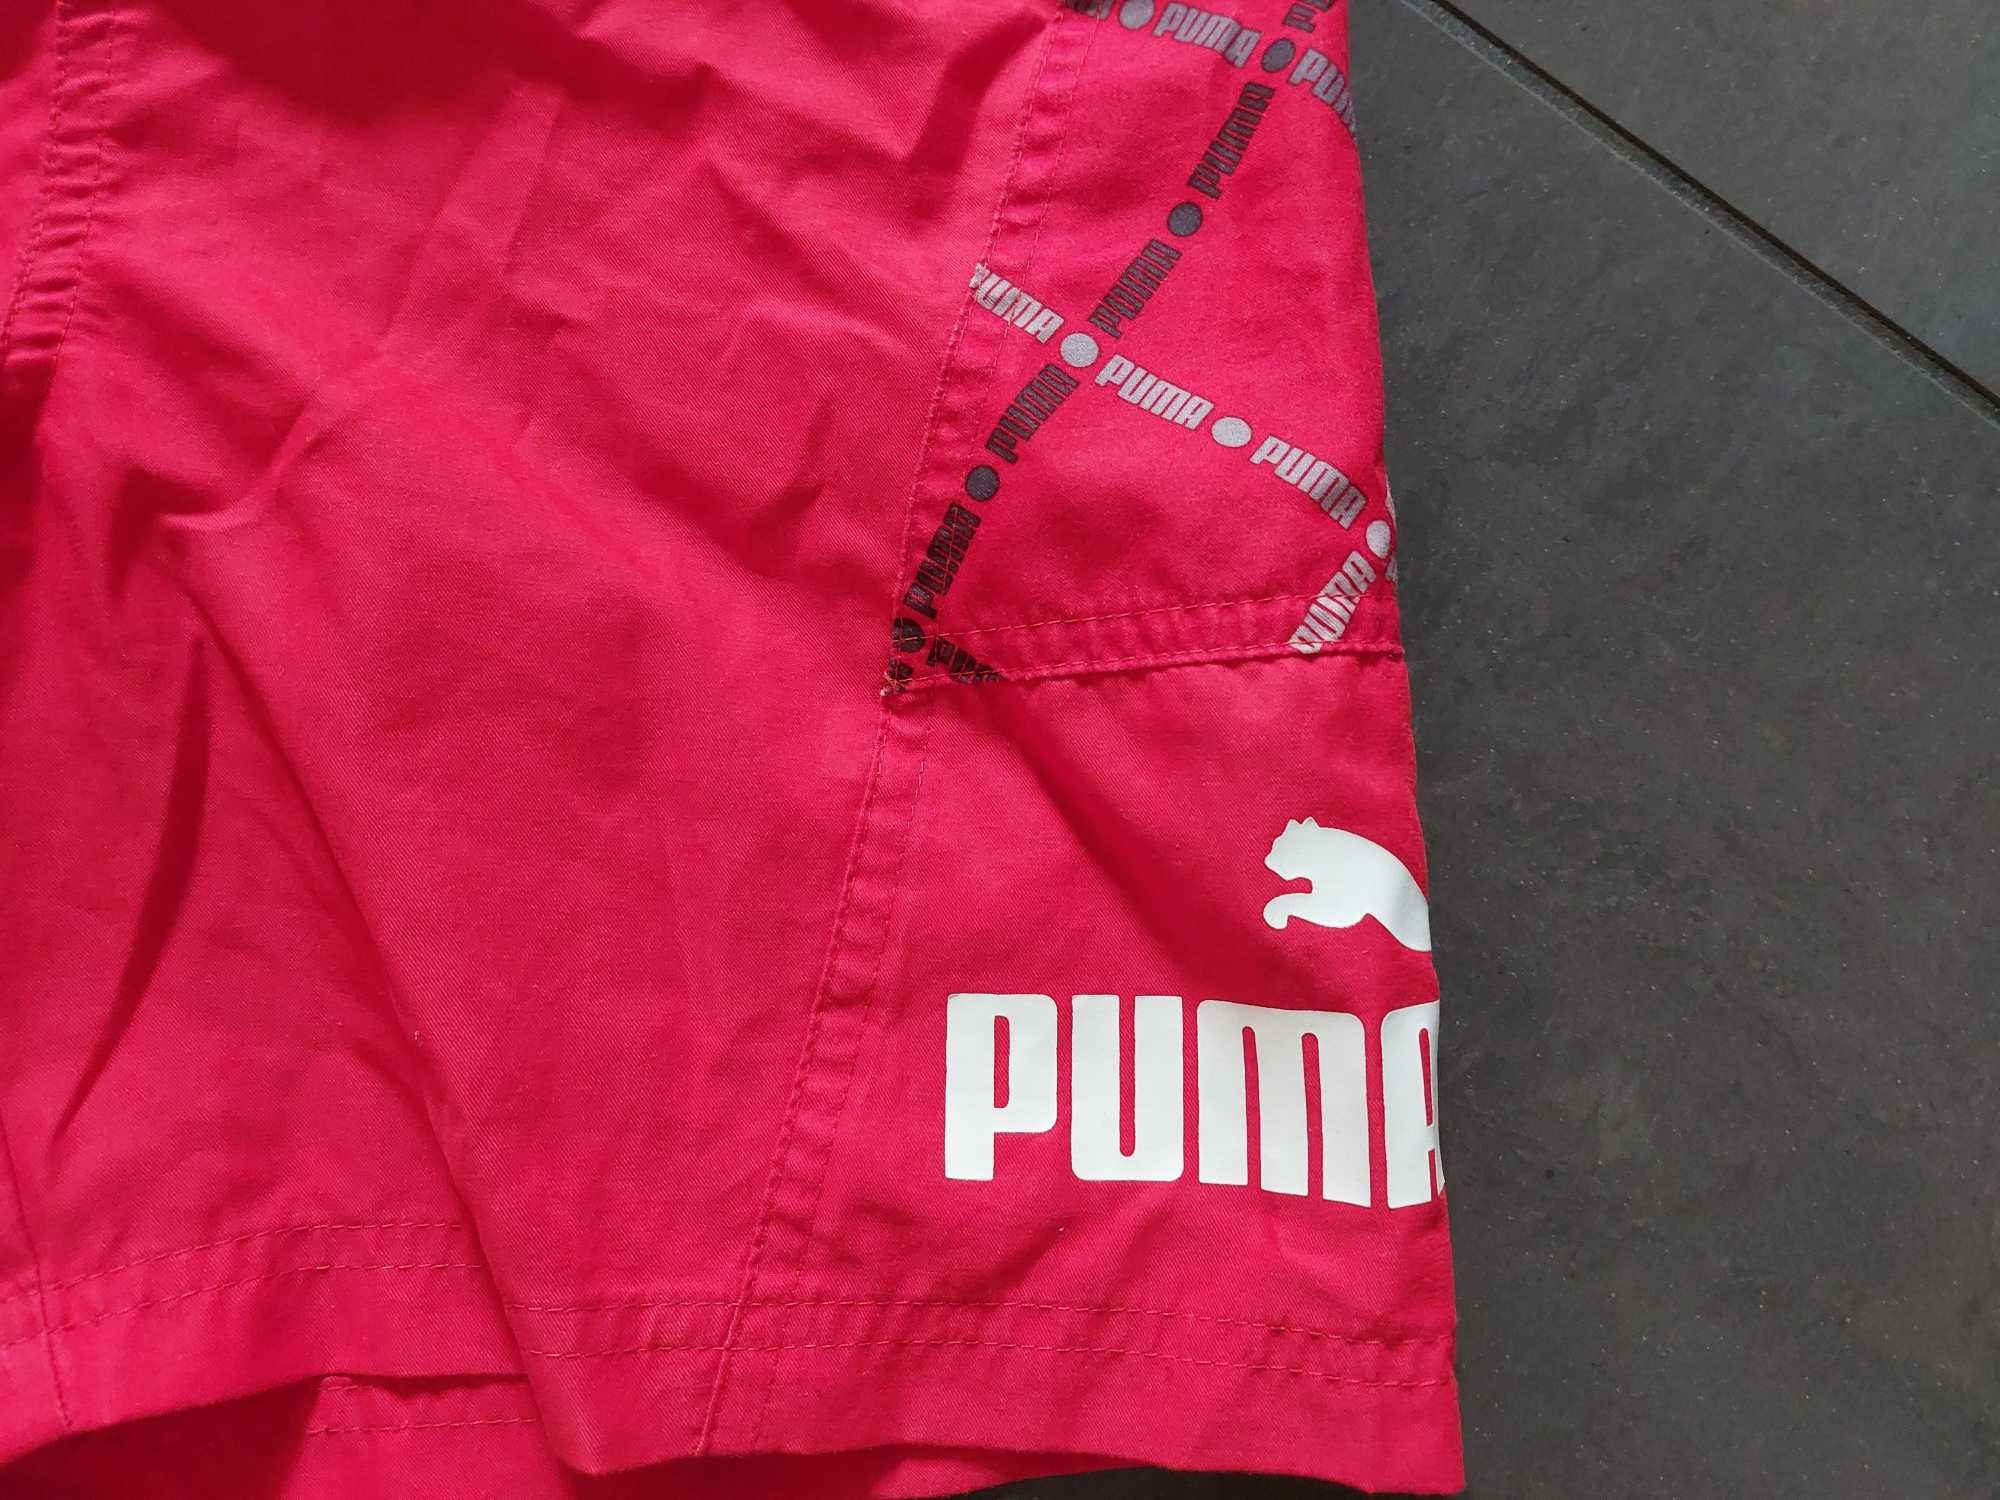 Bluza i spodenki sportowe Puma.